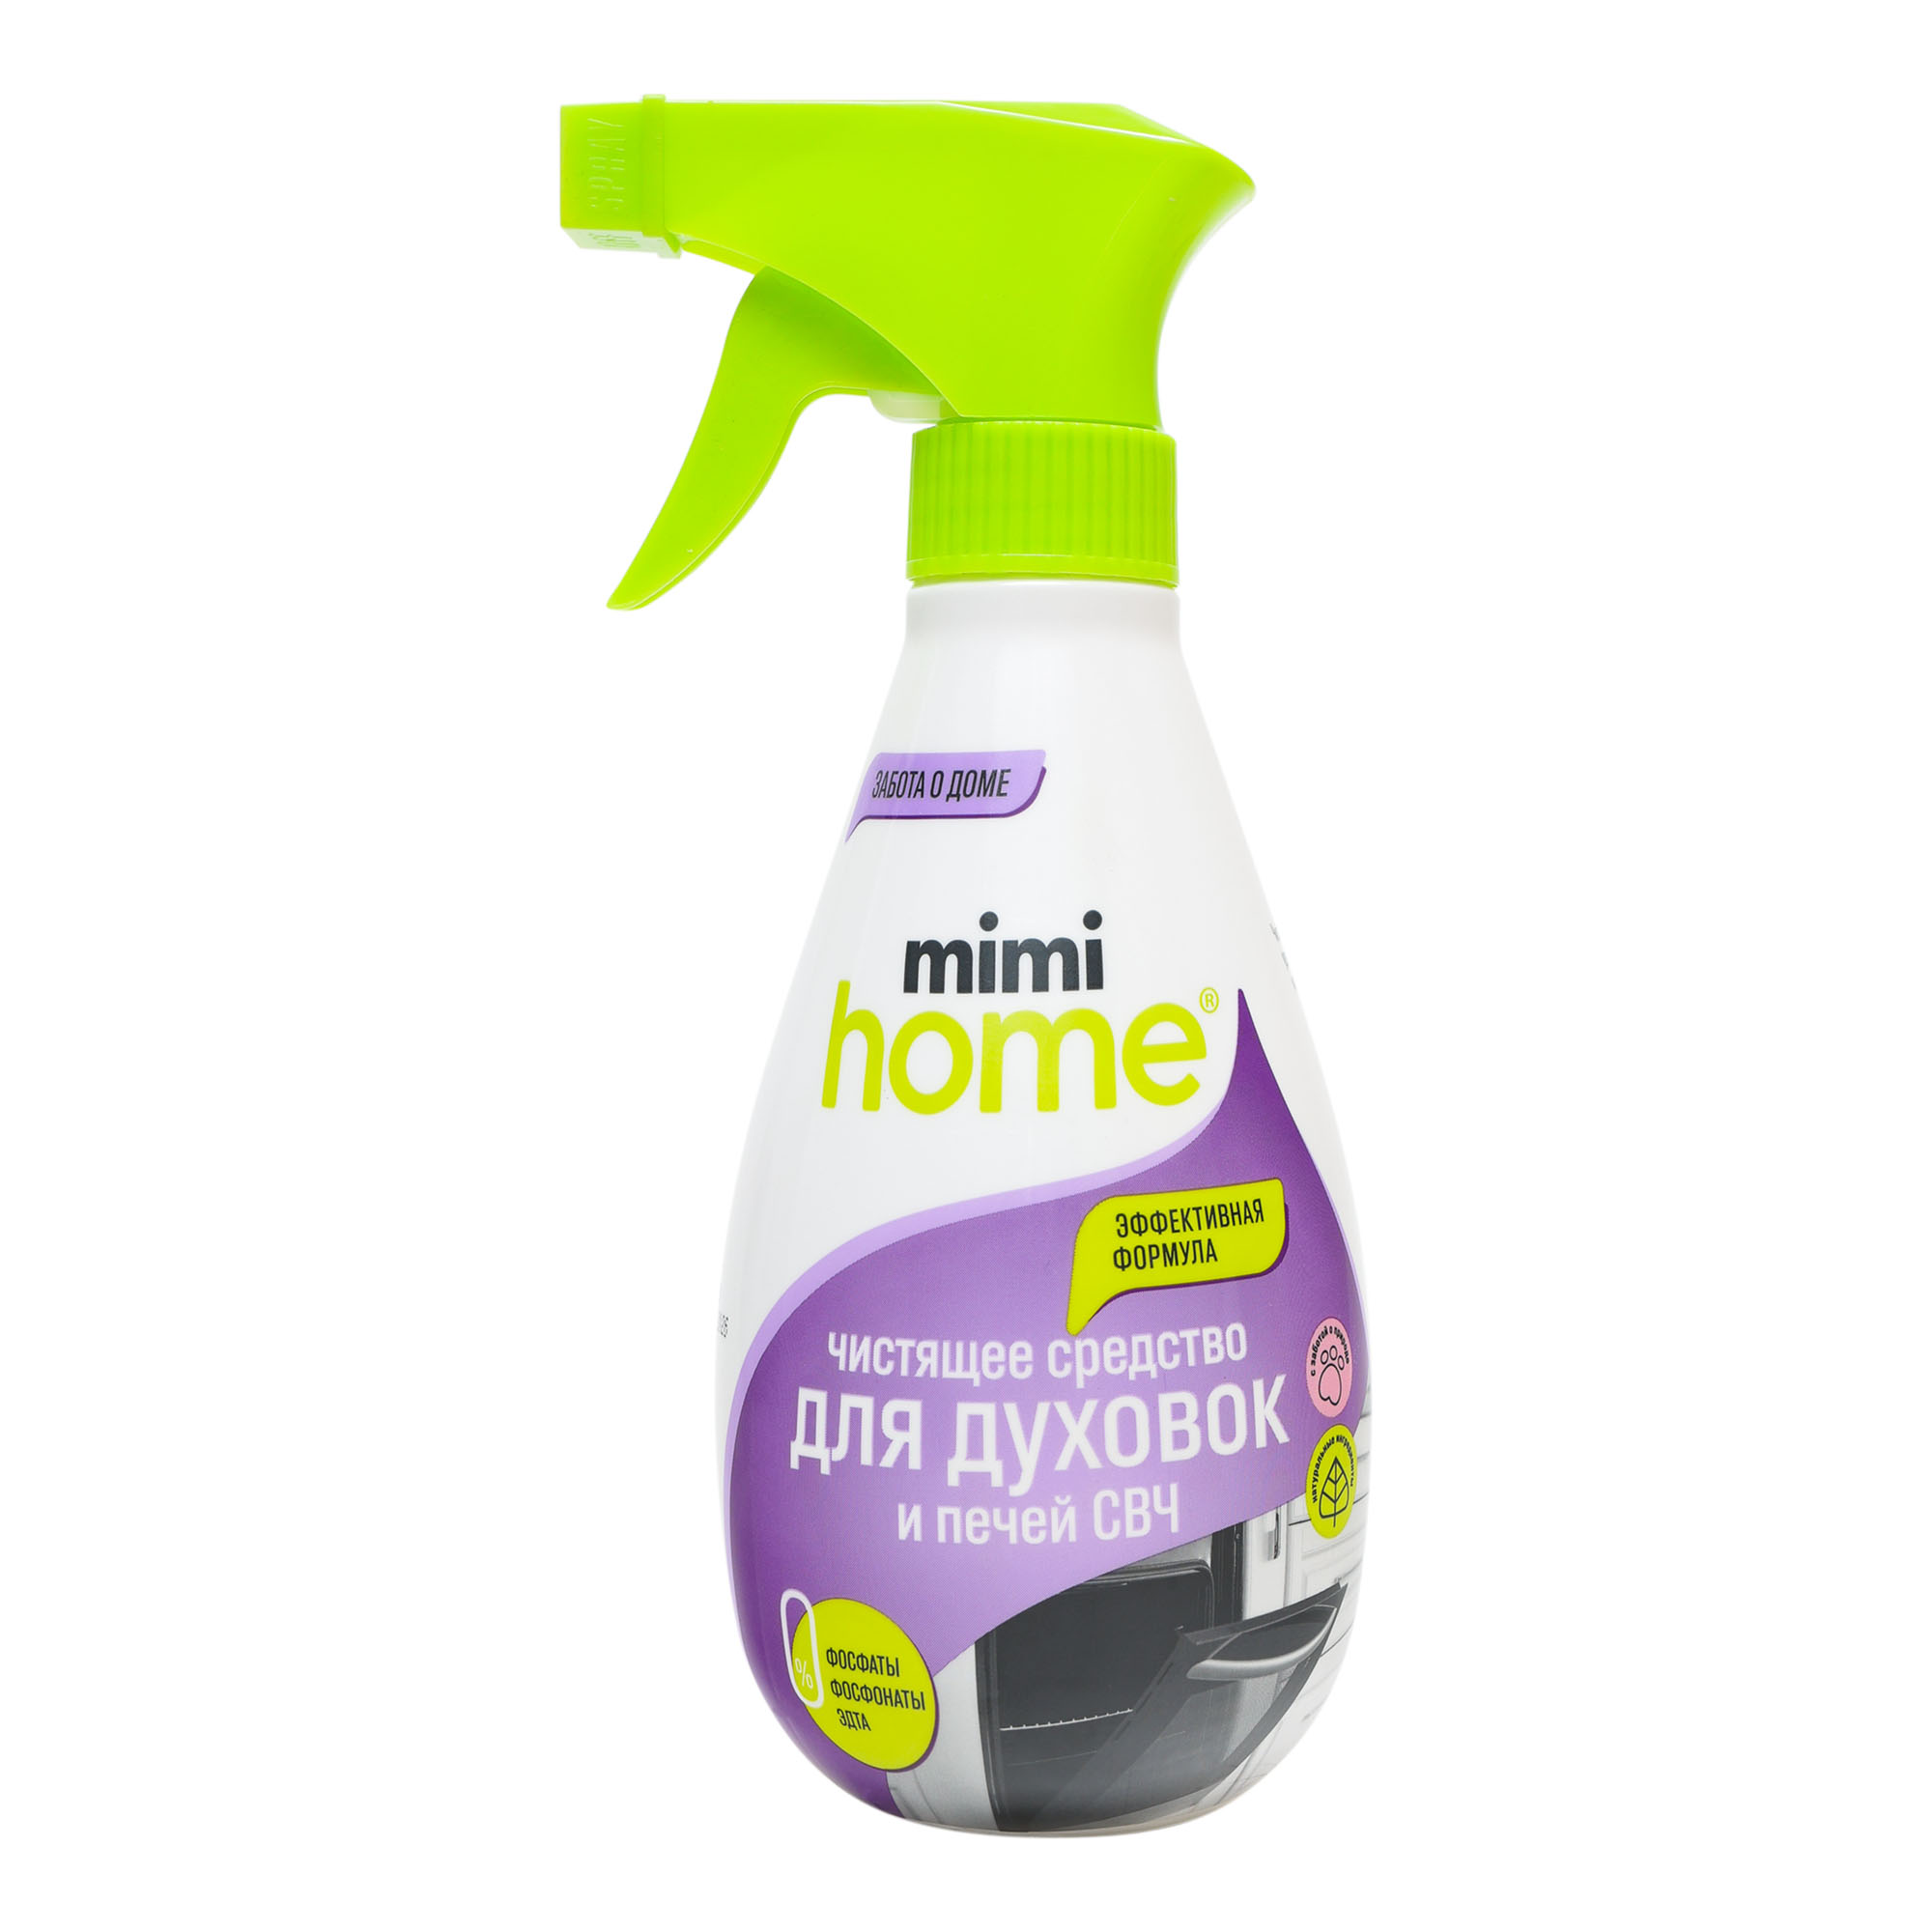 Средство чистящее Mimi Home для духовок и свч 370 мл чистящее средство для кухонных поверхностей clean home